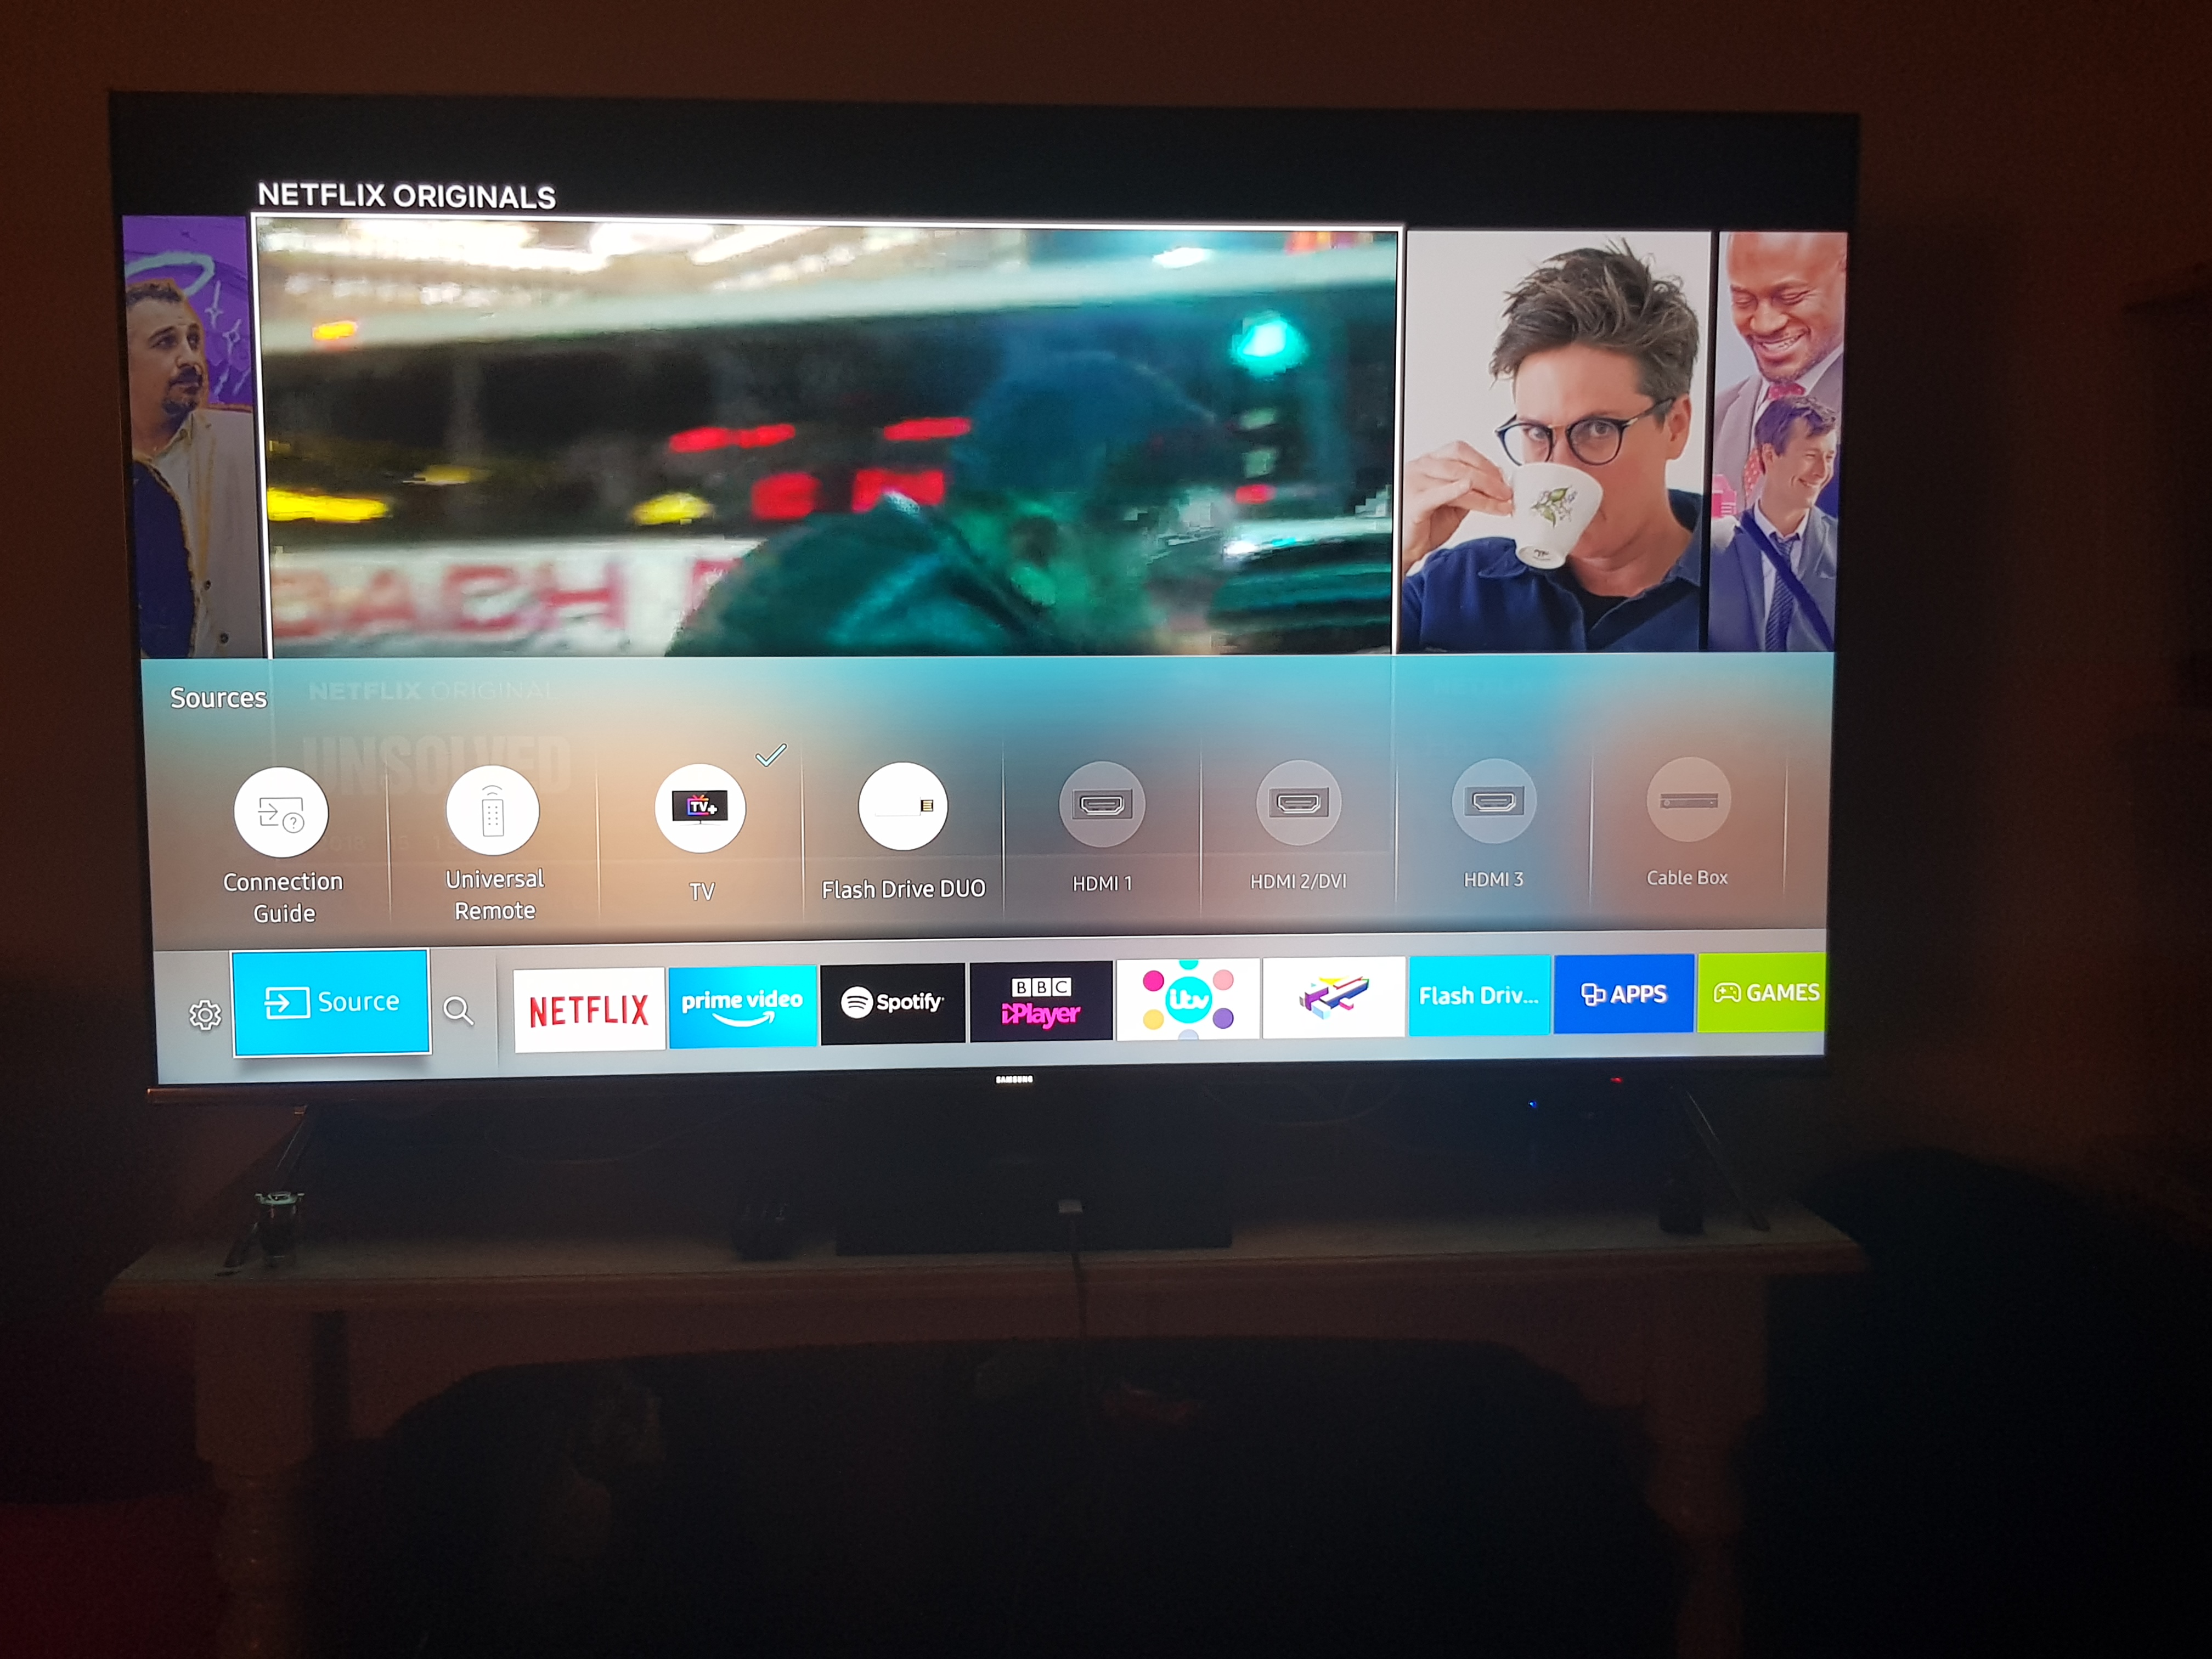 samsung smart tv playstation 4